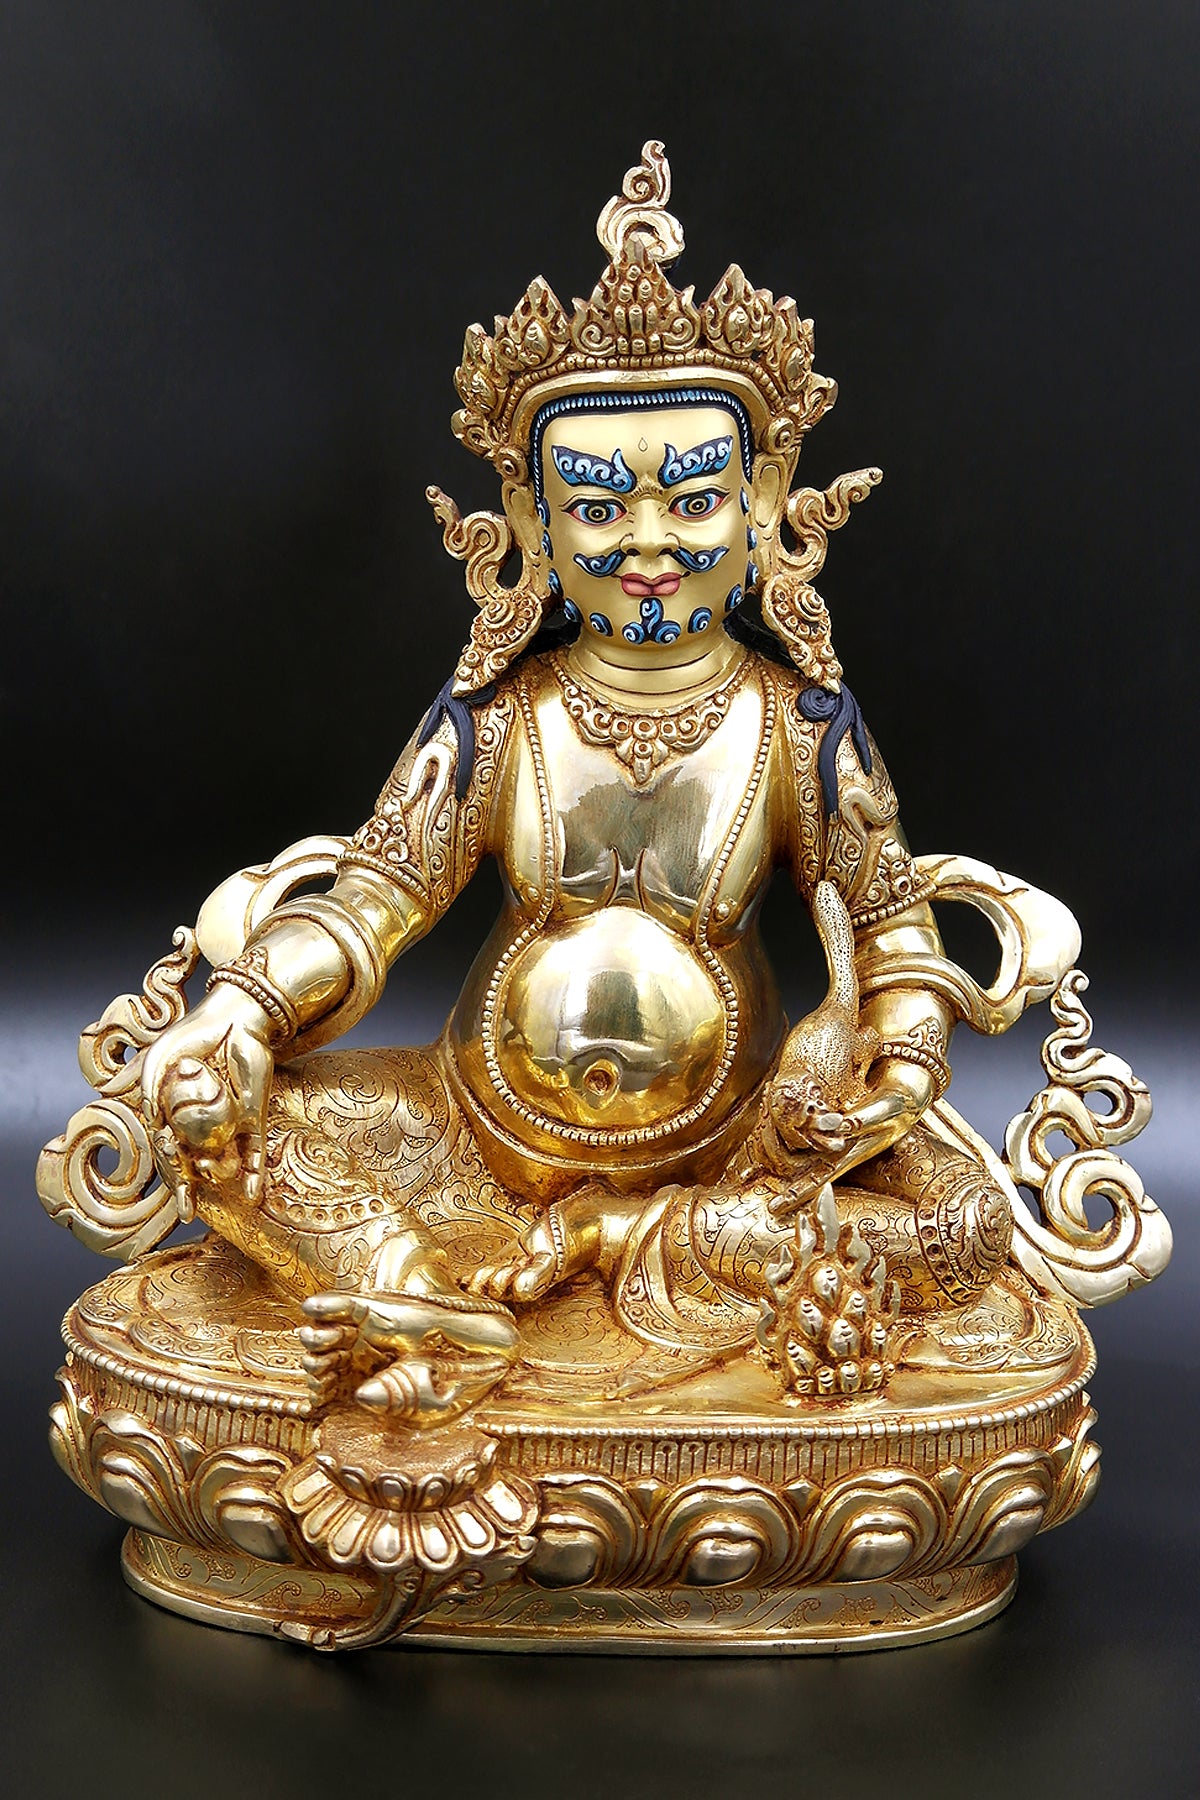 Gold Plated Zambala Statue from Patan 10.5"